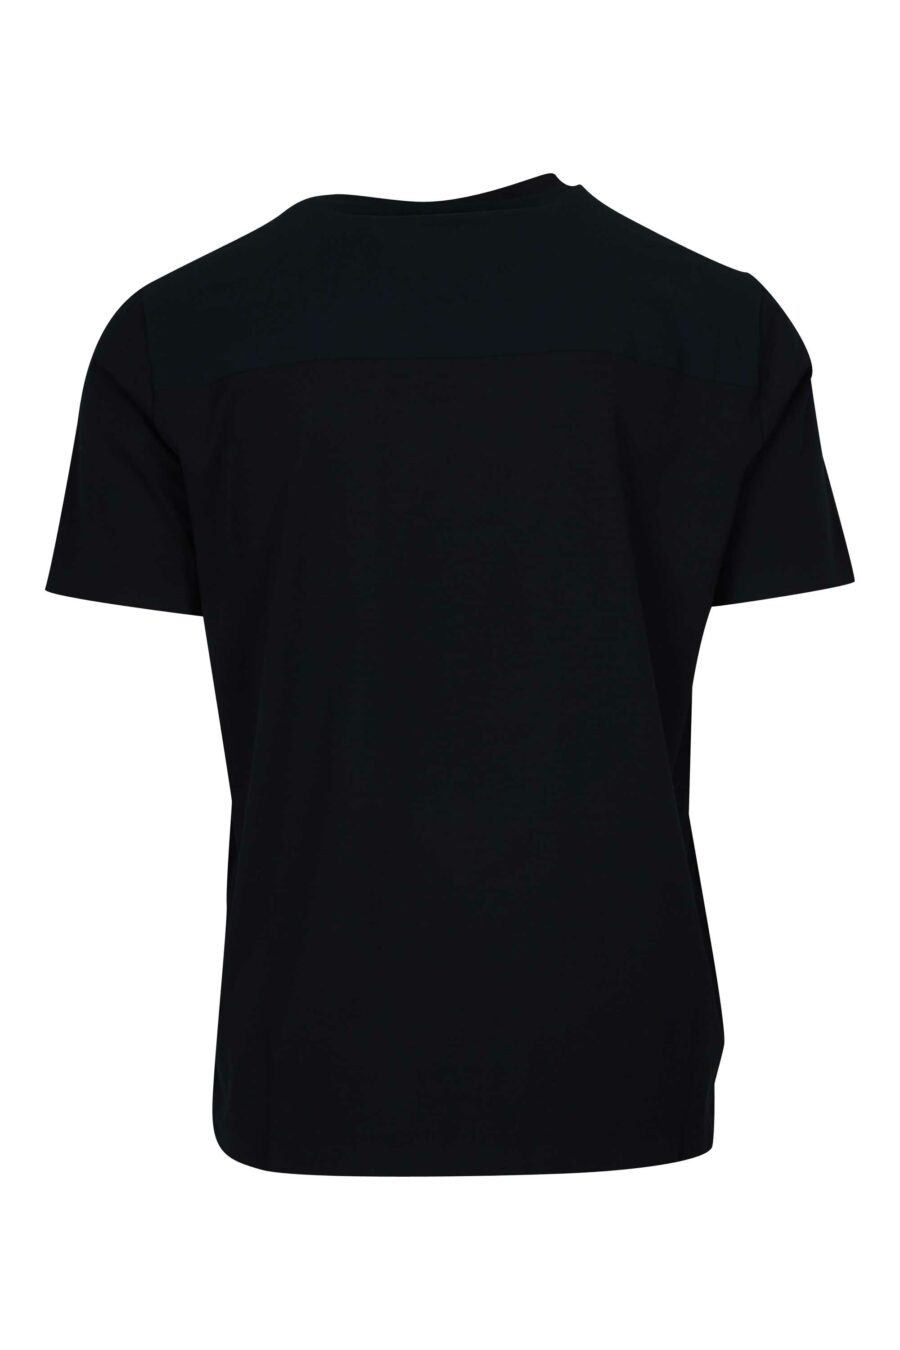 Schwarzes Strick-T-Shirt mit Logo - 8055721922492 1